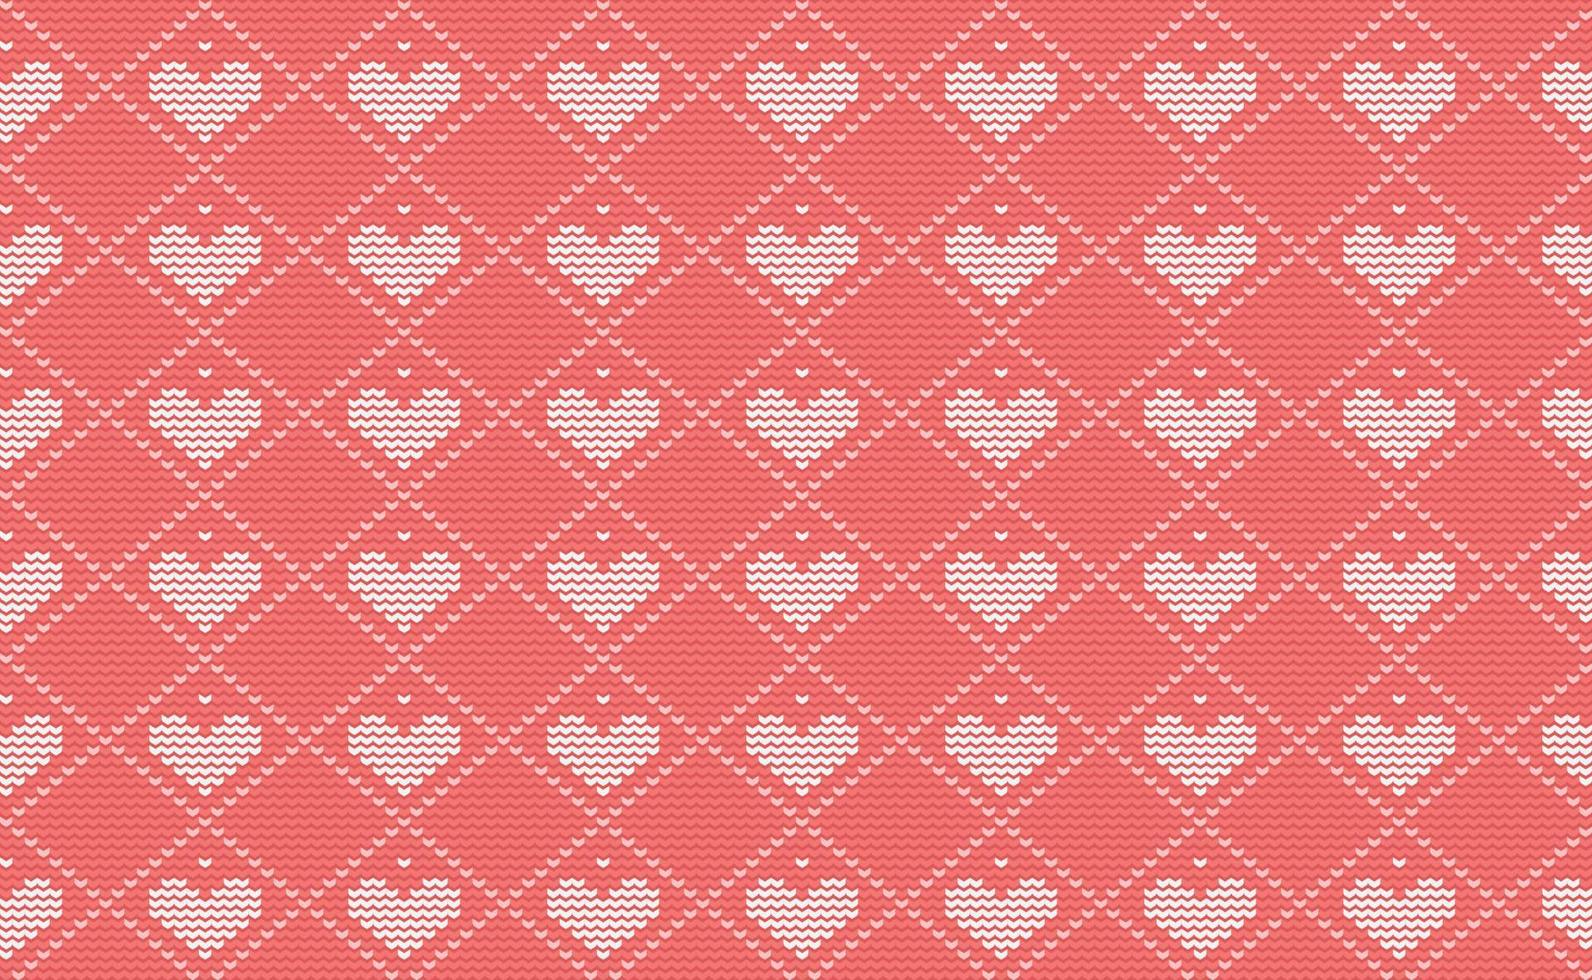 vector de patrón de punto de corazón, fondo continuo de bordado de amor blanco y rojo, textura clásica de tela